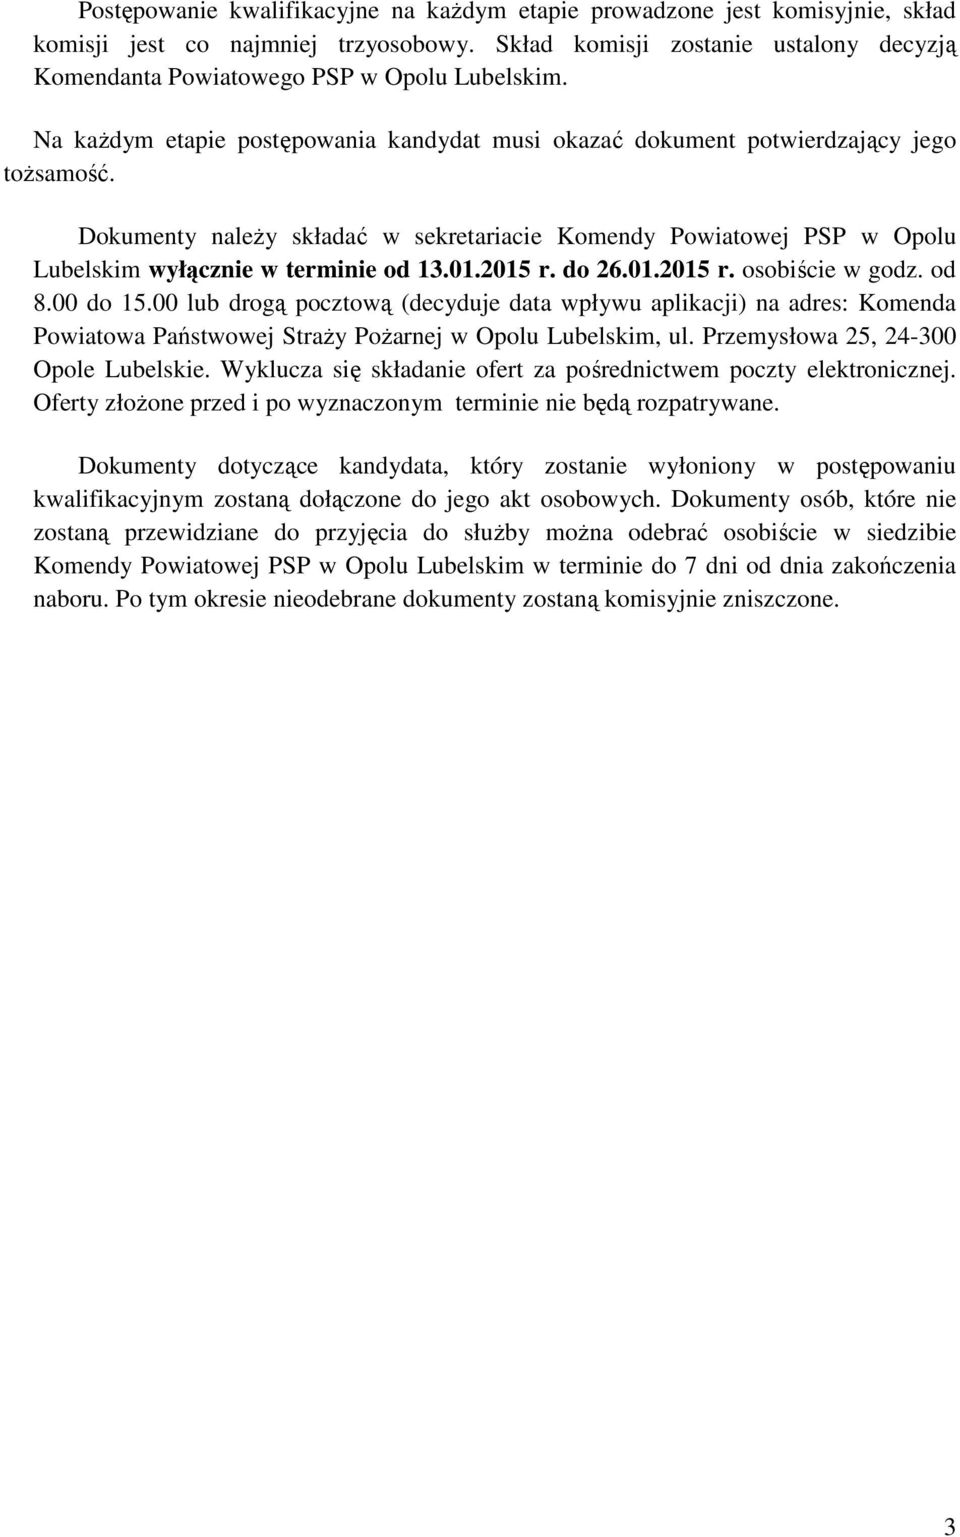 Dokumenty należy składać w sekretariacie Komendy Powiatowej PSP w Opolu Lubelskim wyłącznie w terminie od 13.01.2015 r. do 26.01.2015 r. osobiście w godz. od 8.00 do 15.